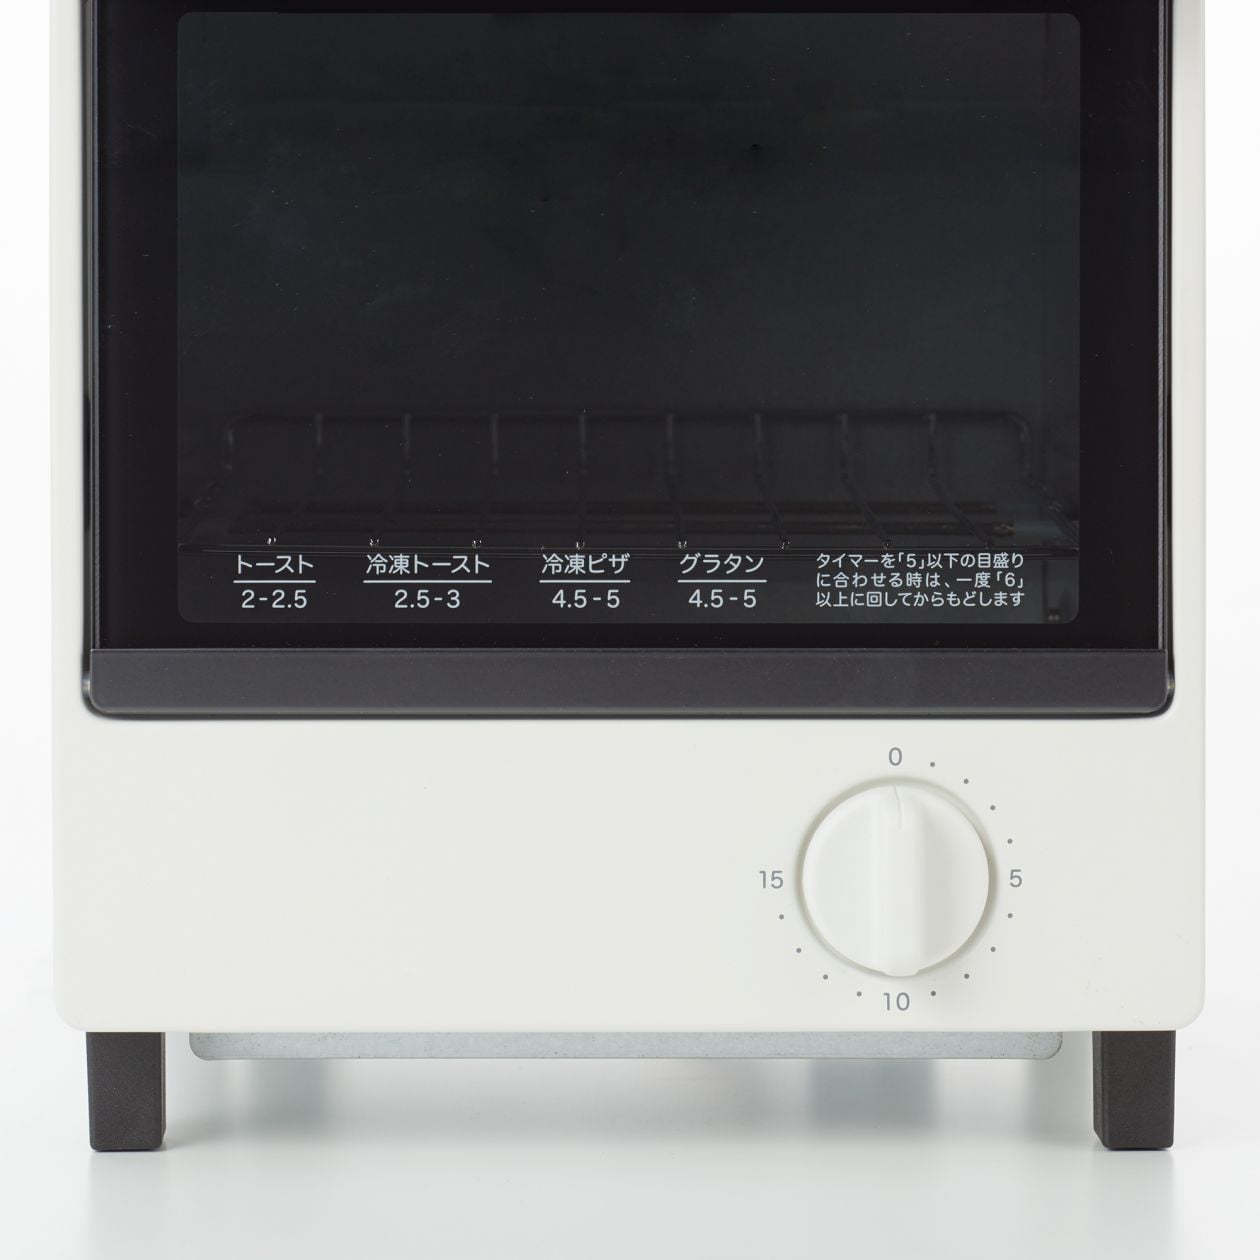 無印良品(MUJI) オーブントースター MJ-SOT1の商品画像サムネ3 